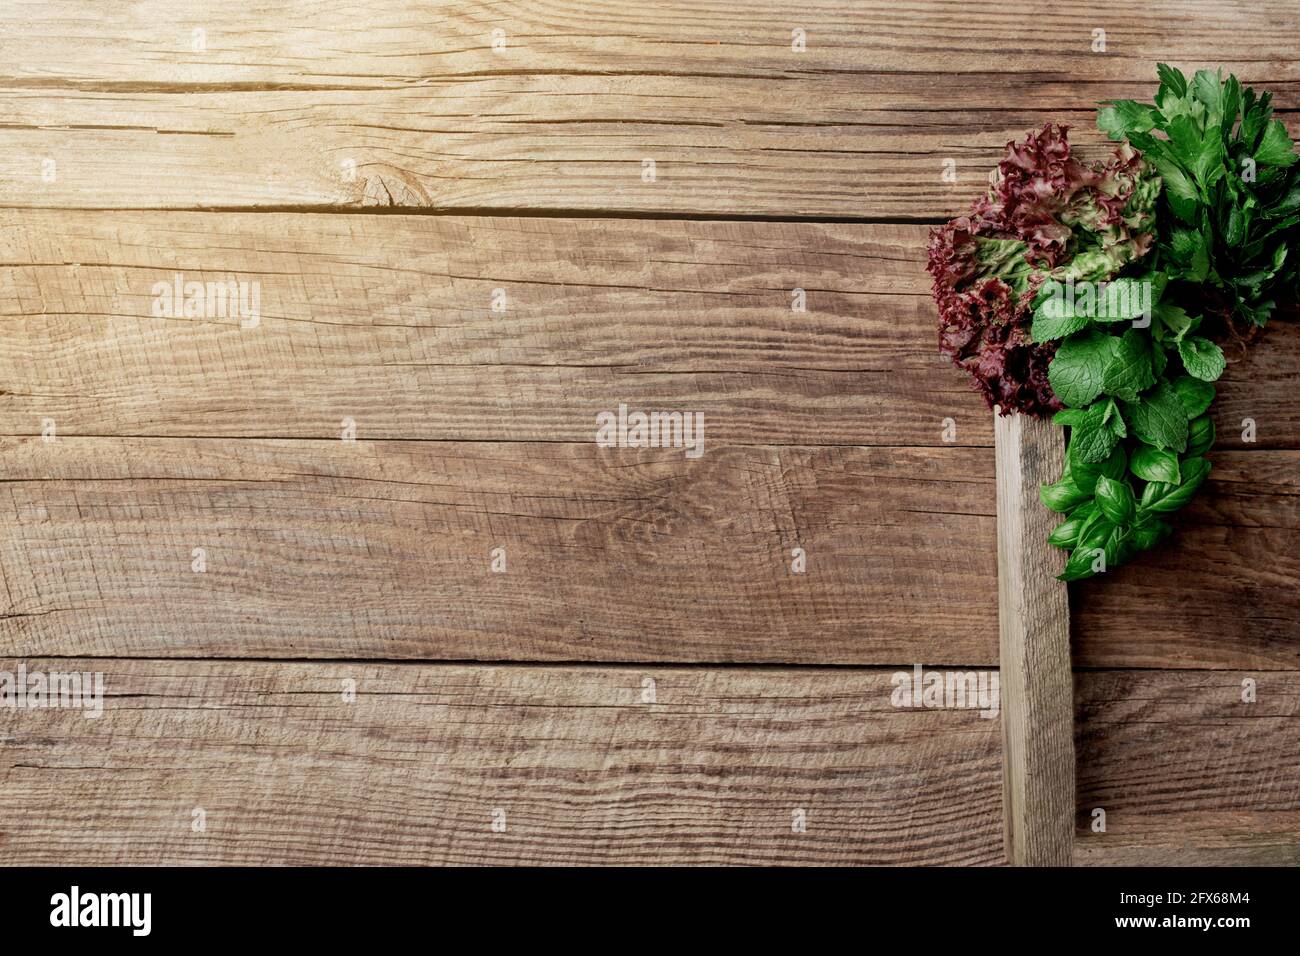 Gartenarbeit und gesundes Esskonzept mit verschiedenen Kräutern und Salat Blätter auf hölzernen Hintergrund in Holzbehälter Stockfoto